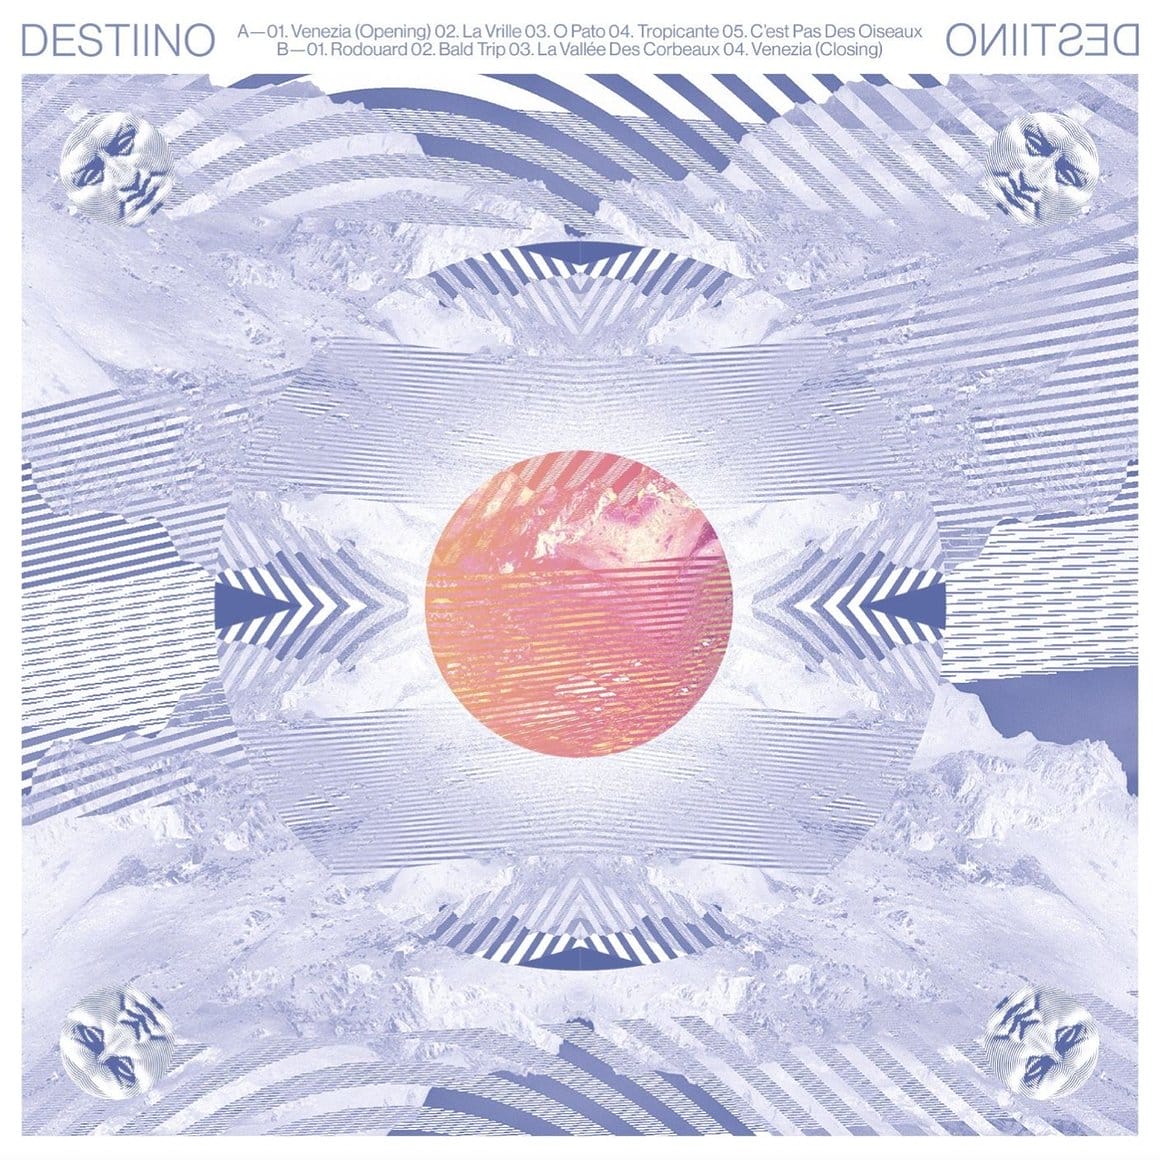 pochette de l'album Destiino. Collage psychédélique et géométrique aux teintes lavandes et pêches.